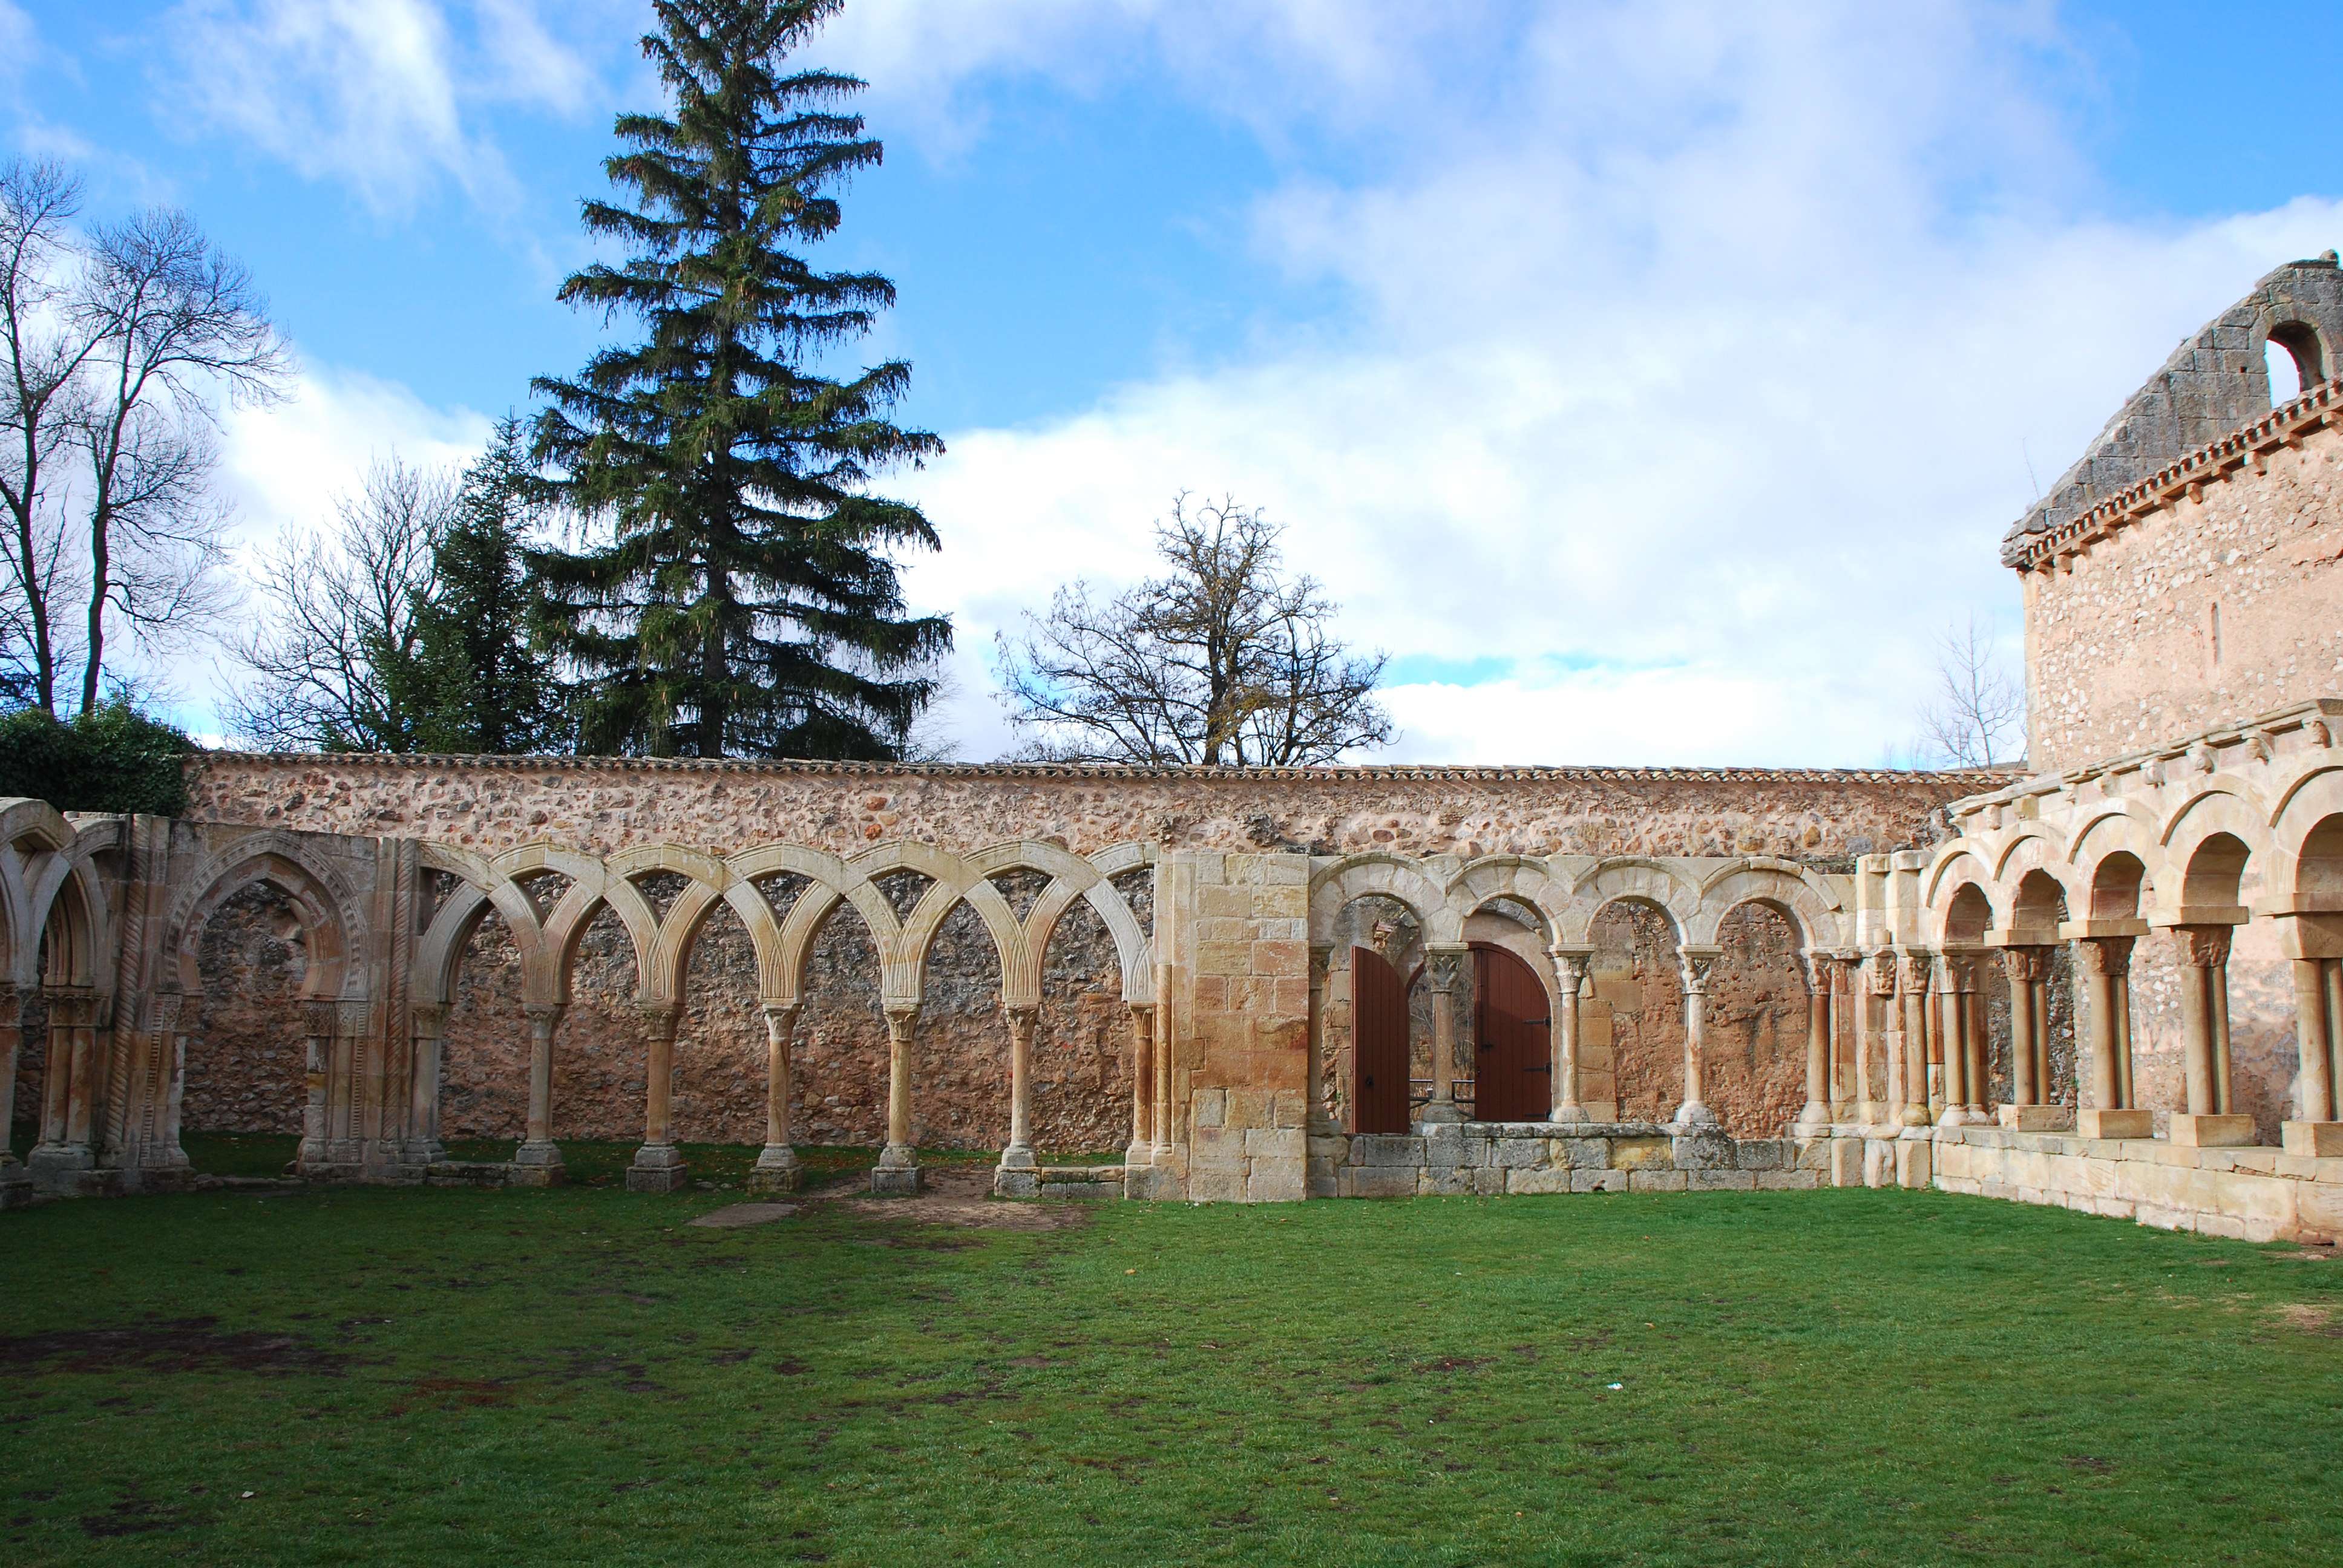 Monasterio de San Juan de Duero. Un enigma - Blogs of Spain - Monasterio de San Juan de Duero (12)